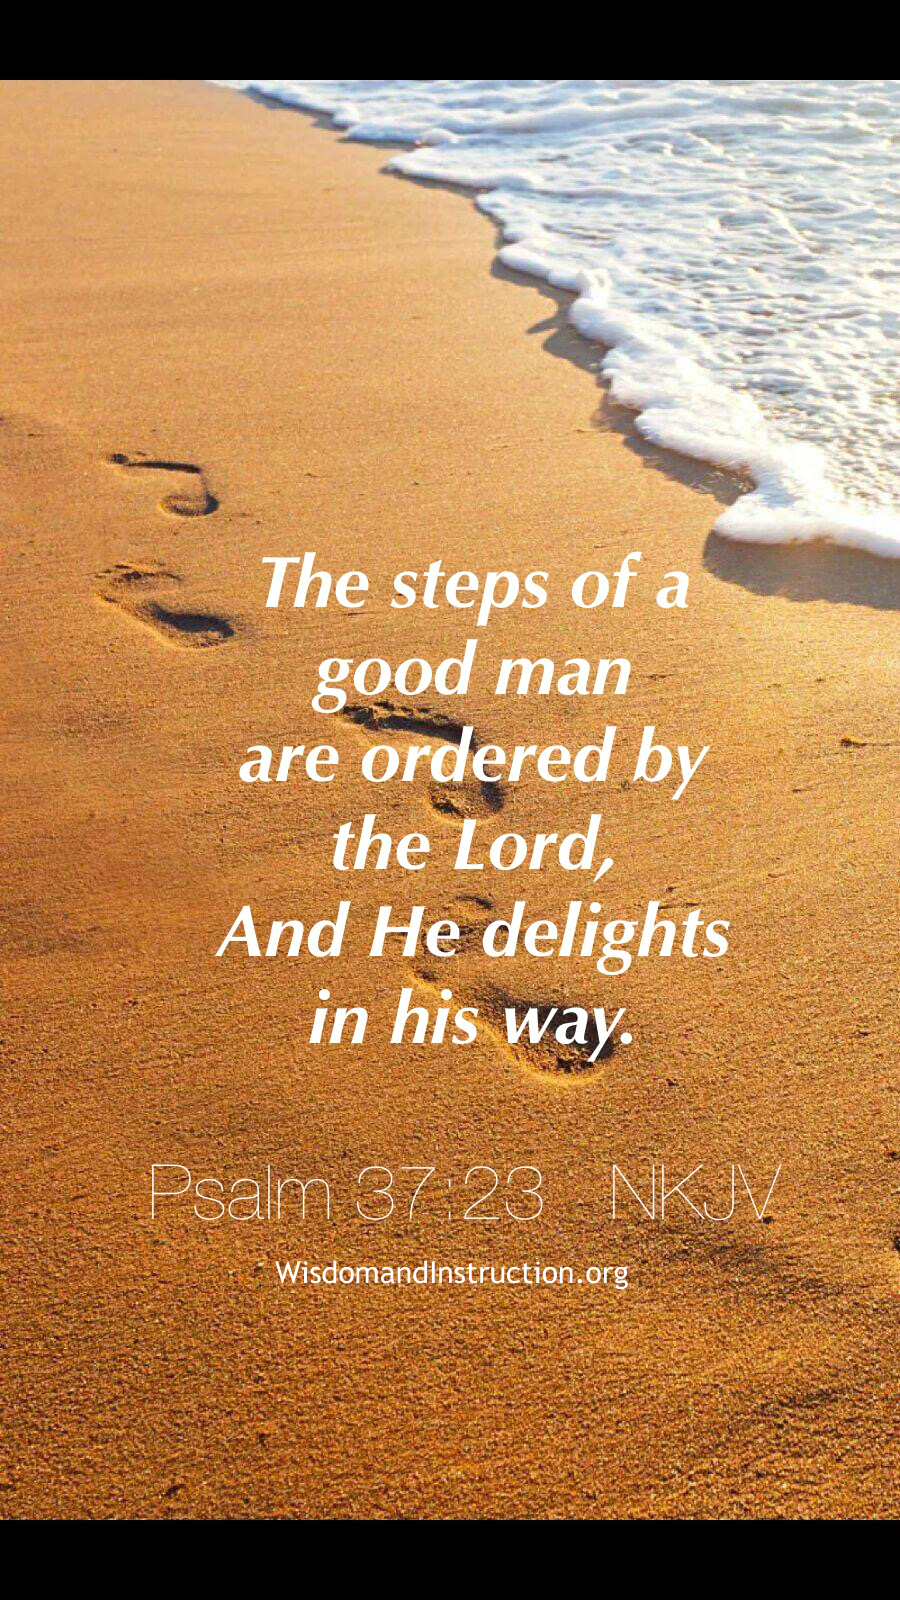 Wisdom and Instruction: Psalm 37:23 NKJV